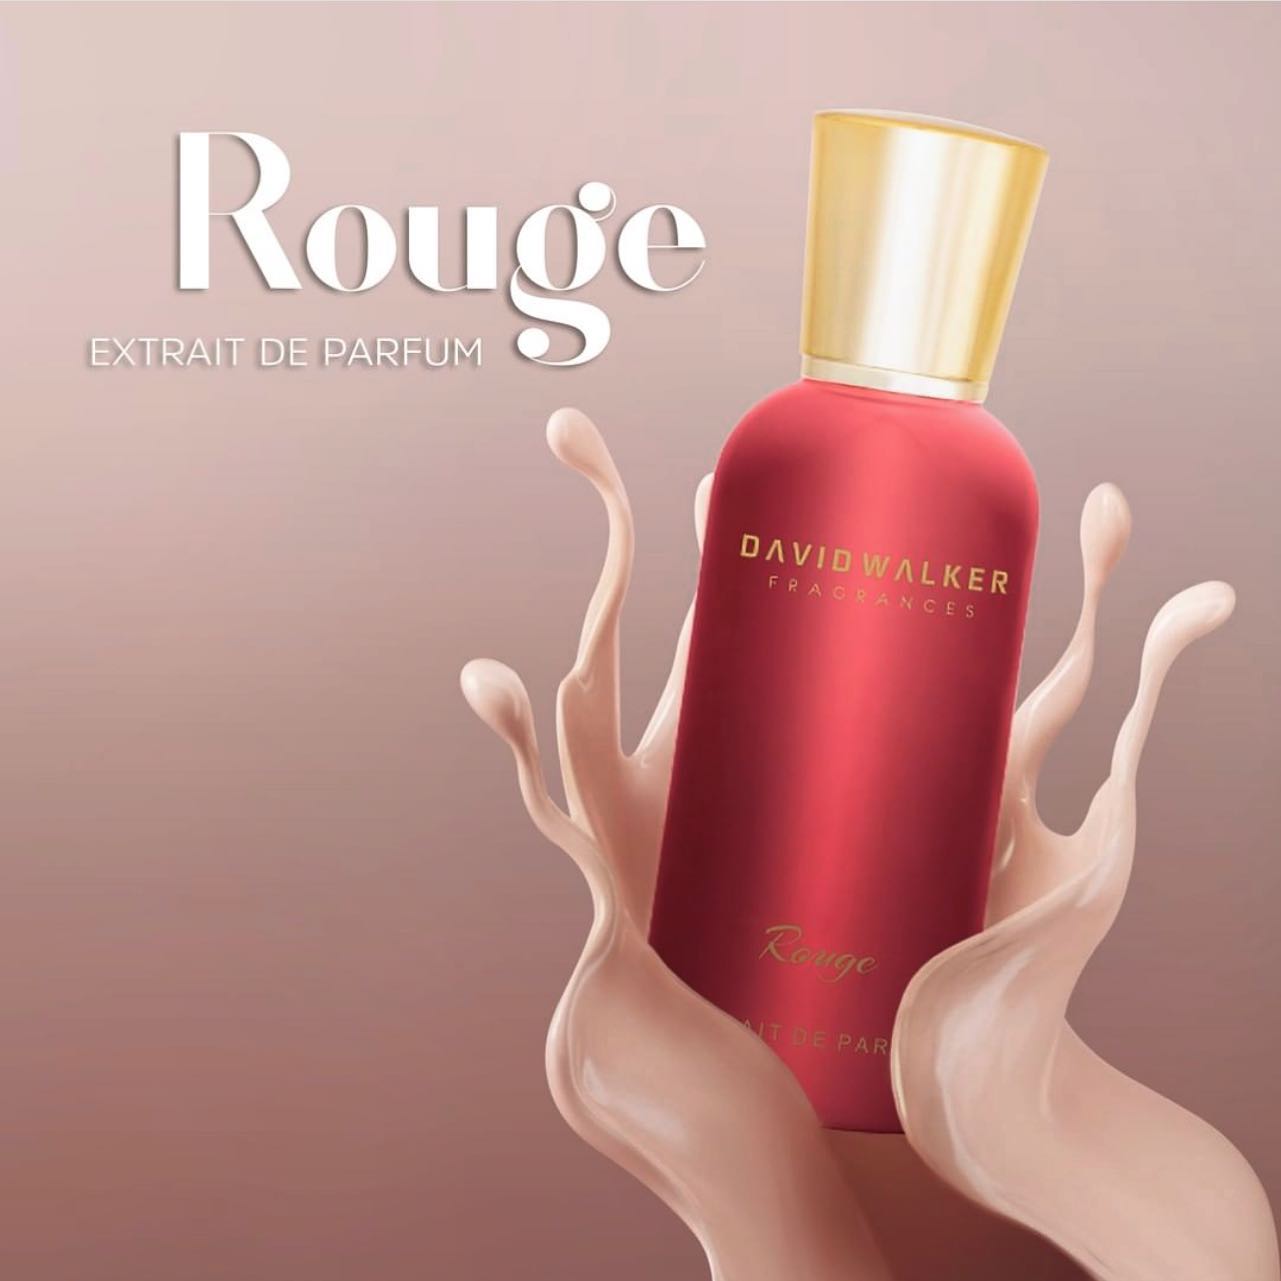 Naš novi parfem iz nove serije Special Edition "Rouge" - To je vrlo uvjerljiv, posebno proizveden proizvod s jedinstvenom mješavinom našeg brenda i upotrebom esencija visokog nivoa.  Čekamo vas u našim radnjama da upoznate našu novu posebnu seriju parfema. 

 #davidwalker #parfem #parfemi #kozmetika #extrait #extraitdeparfum #davidwalkerparfimerije #davidwalkerparfemi #sarajevo #zenica #scc #sarajevocitycenter #sarajevocitycentar #muskiparfemi #zenskiparfemi #scc #kozmetika #prirodnakozmetika #ljepota #zdravlje #parfimerije #parfem #londonblackedition #london #londonparfume #londonperfume #njega #argan #arganovoulje #esencijalnaulja #boutiqueparfemi #fisvitez #fis